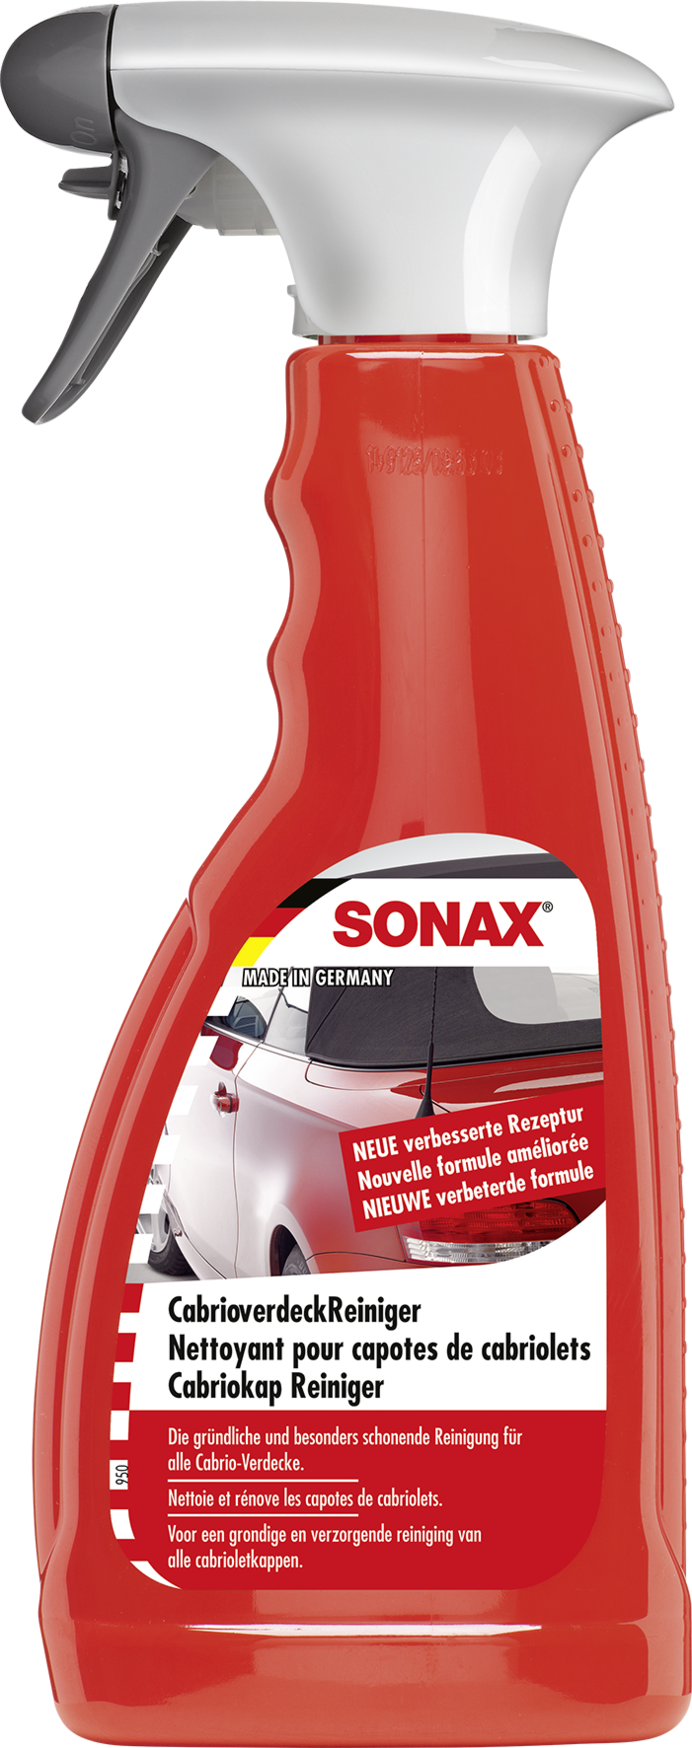 Sonax Cabrio Verdeck Reiniger 500ml - Cabrioverdeckpflege - Außen